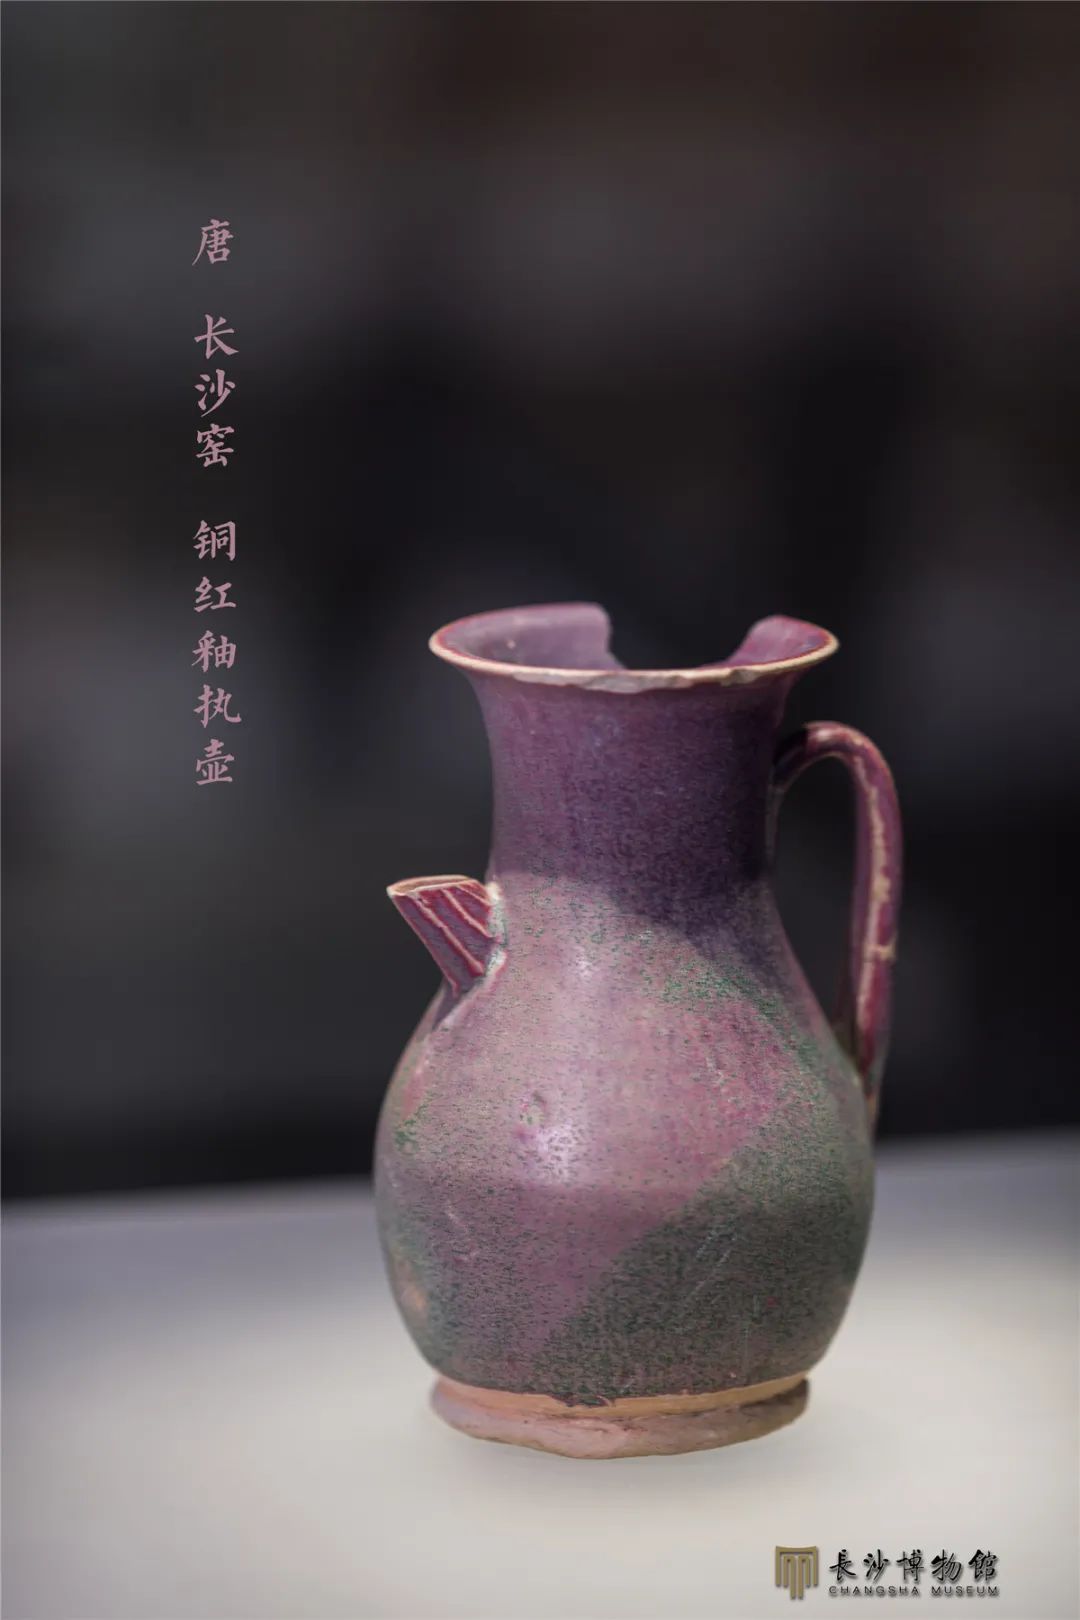 铜红釉执壶 唐（618—907年） 长沙铜官窑遗址出土 长沙市文物考古研究所藏